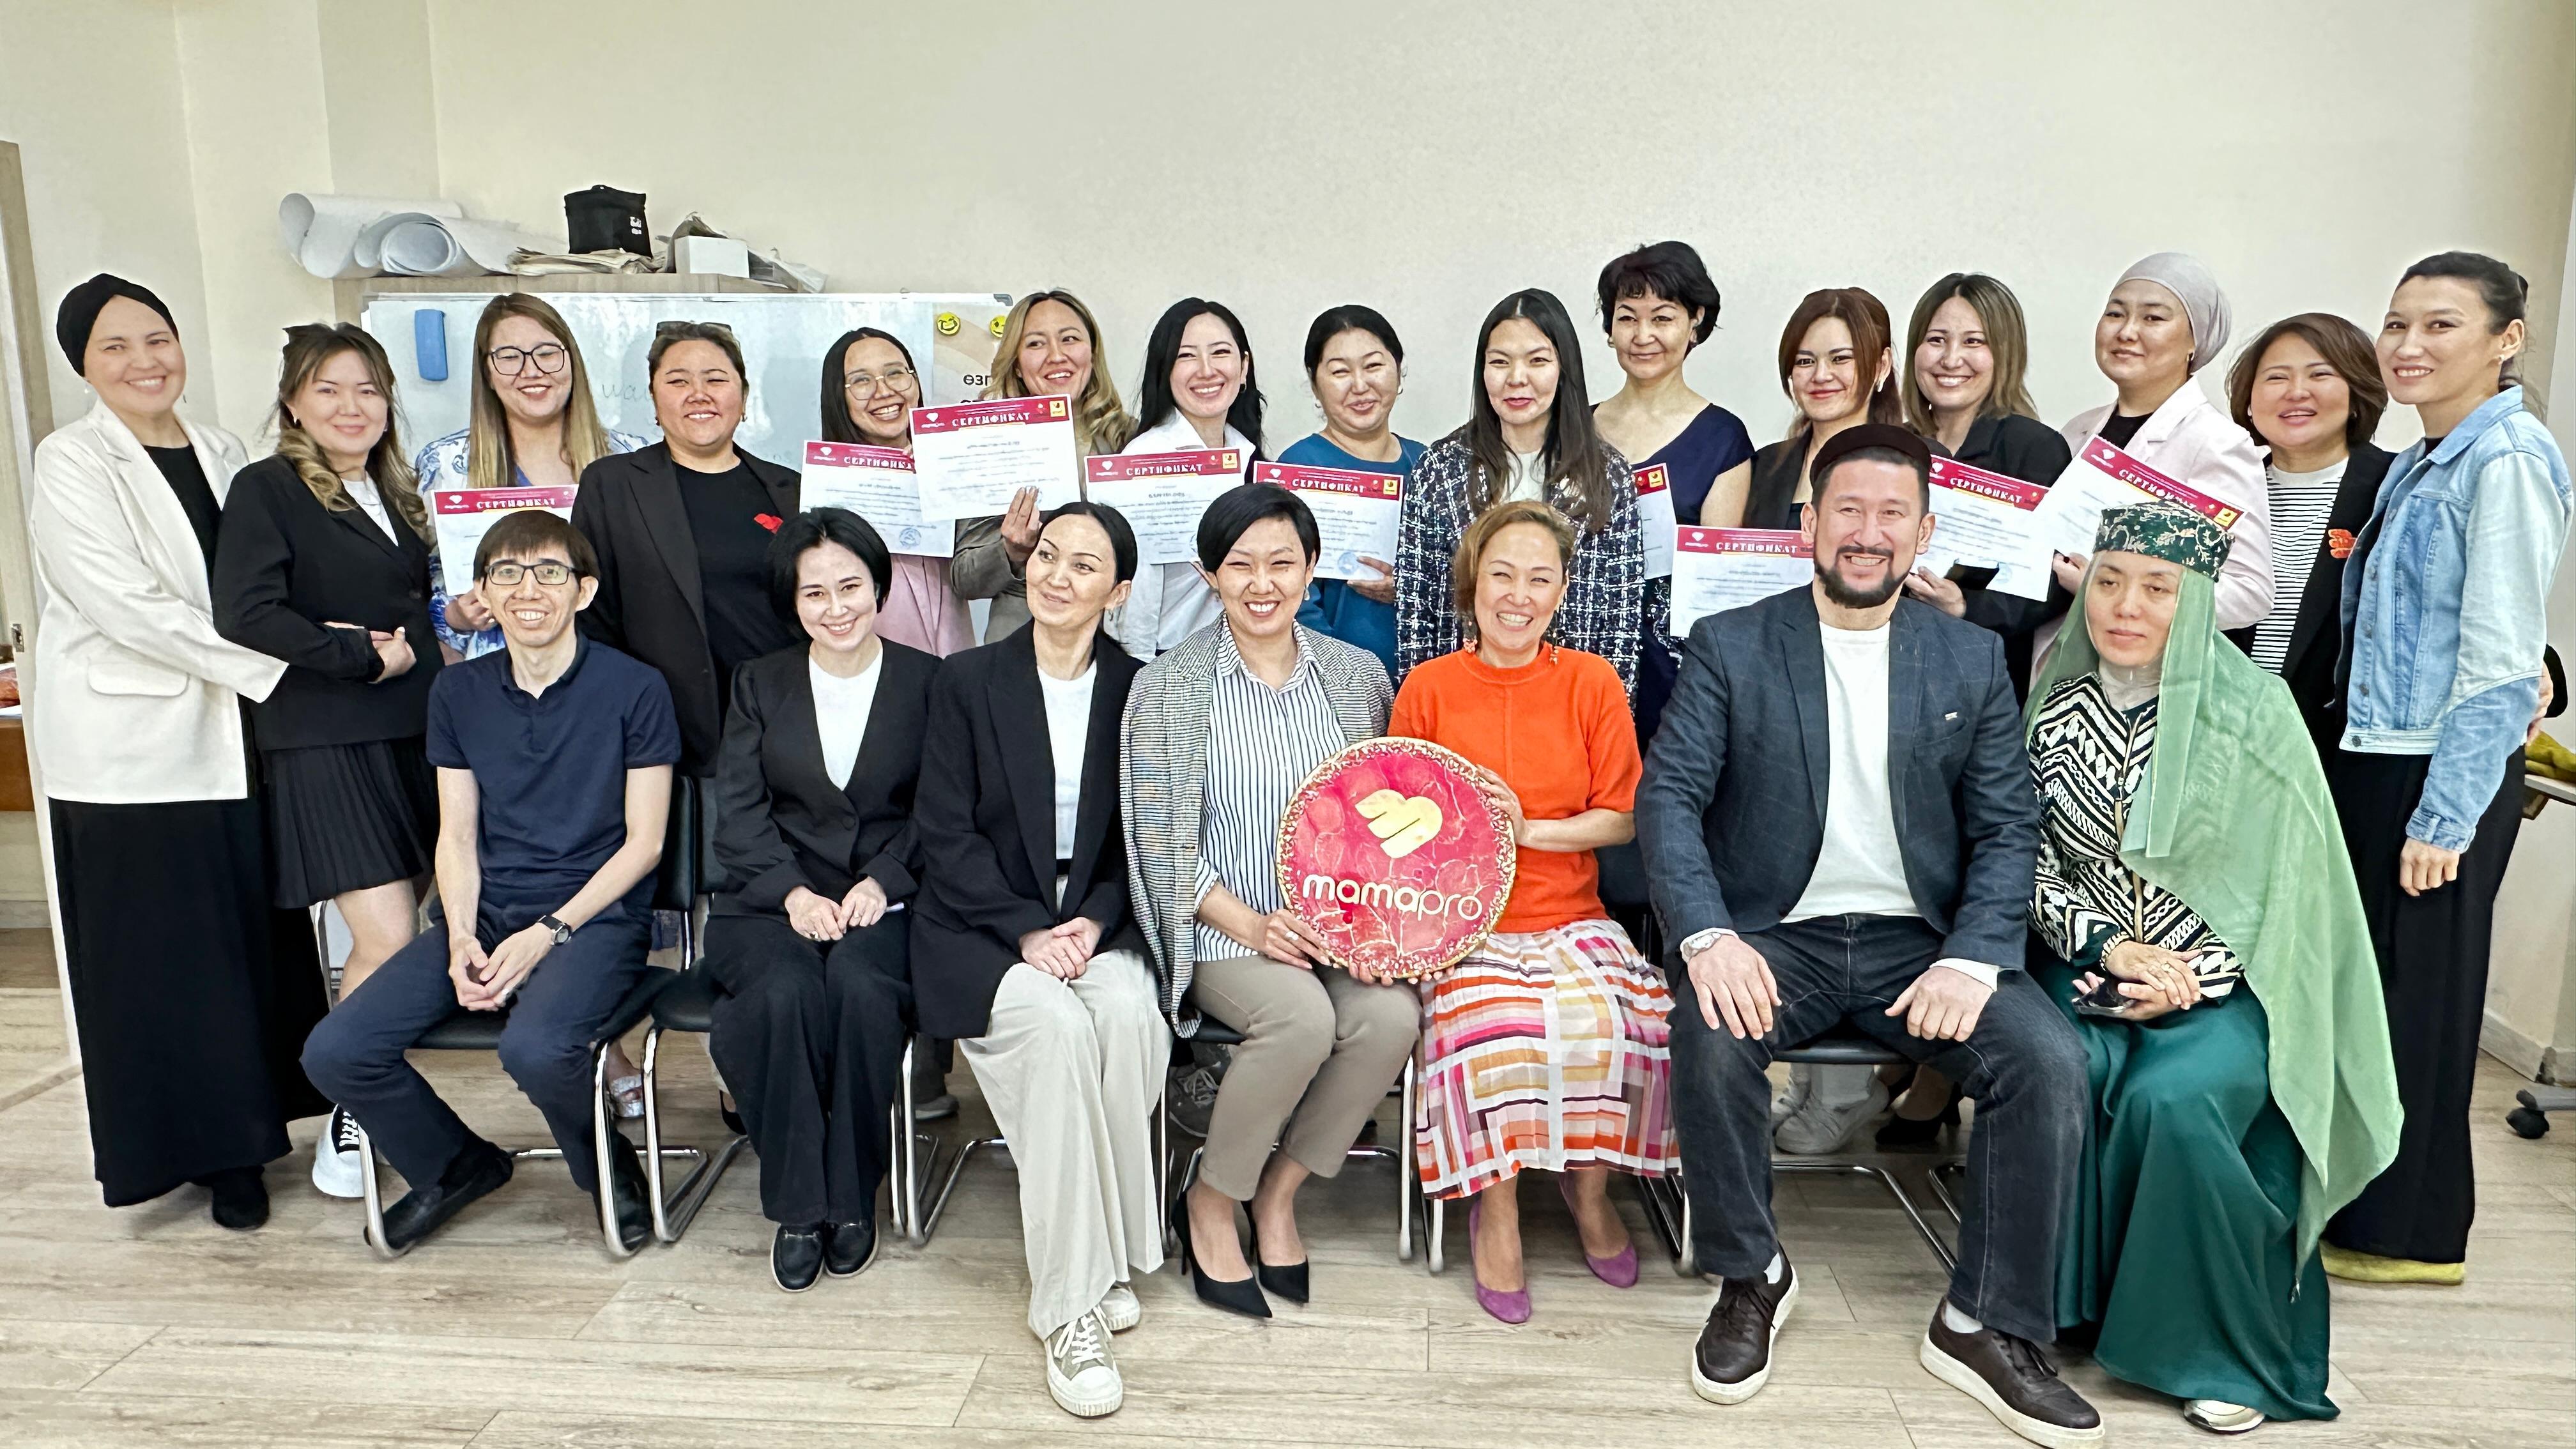 ОФ МамаПро завершил 5 поток группы казахского языка по обучению основам предпринимательства и компьютерной грамотности для мам особенных детей